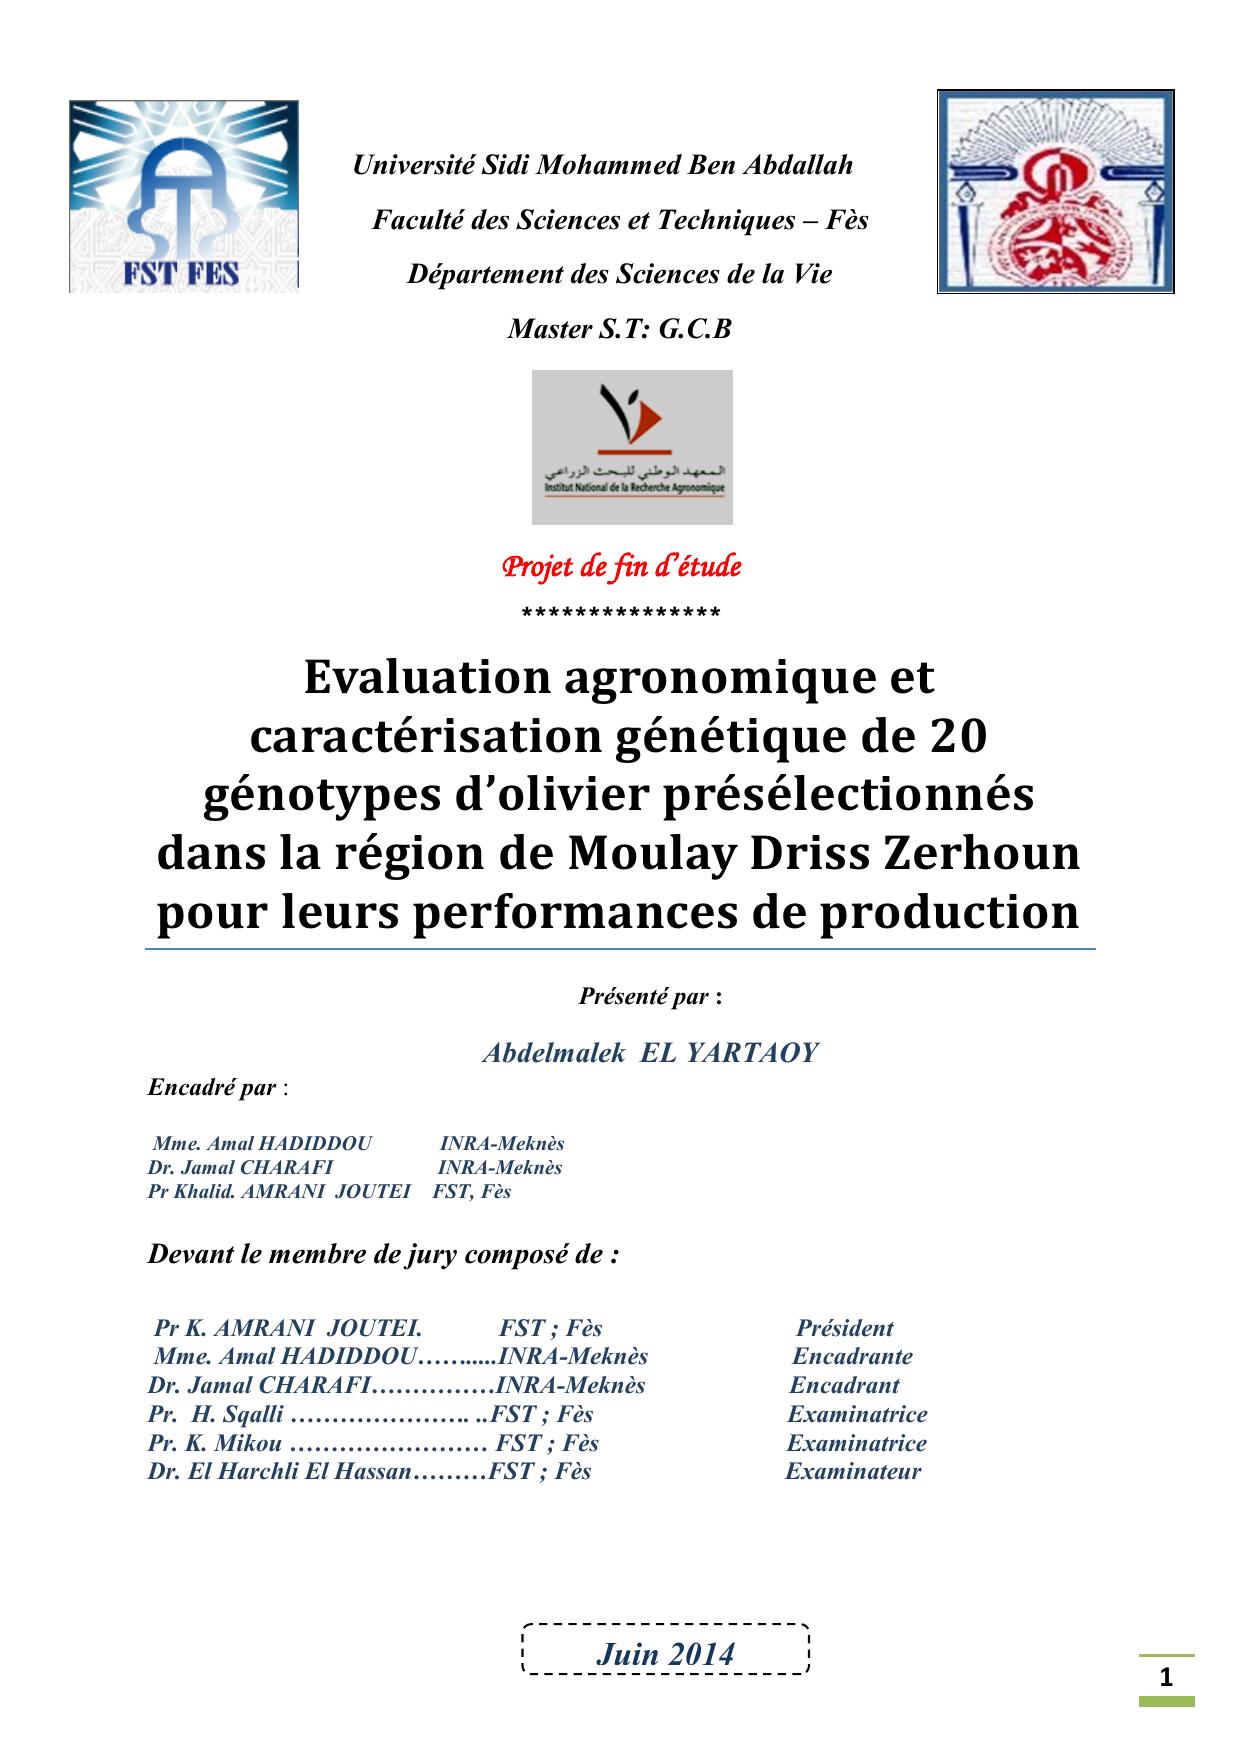 Evaluation agronomique et caractérisation génétique de 20 génotypes d’olivier présélectionnés dans la région de Moulay Driss Zerhoun pour leurs performances de production